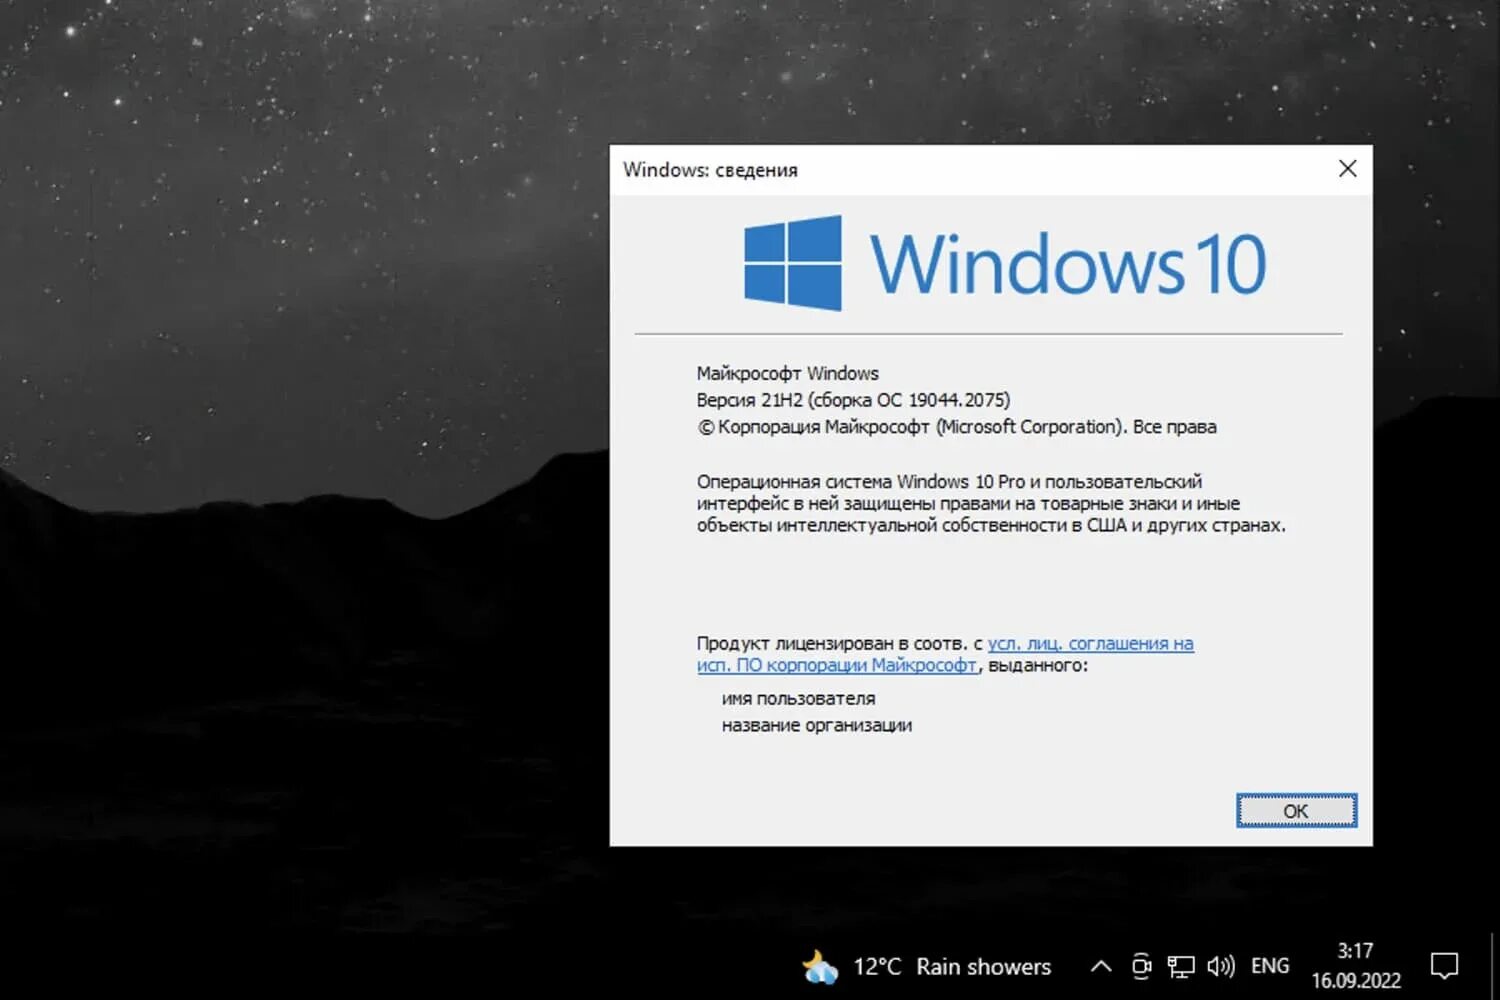 Обновление 10 0. Виндовс 10 21h2. Windows 10, версия 21h1. Последняя версия виндовс 10. Обновление Windows.